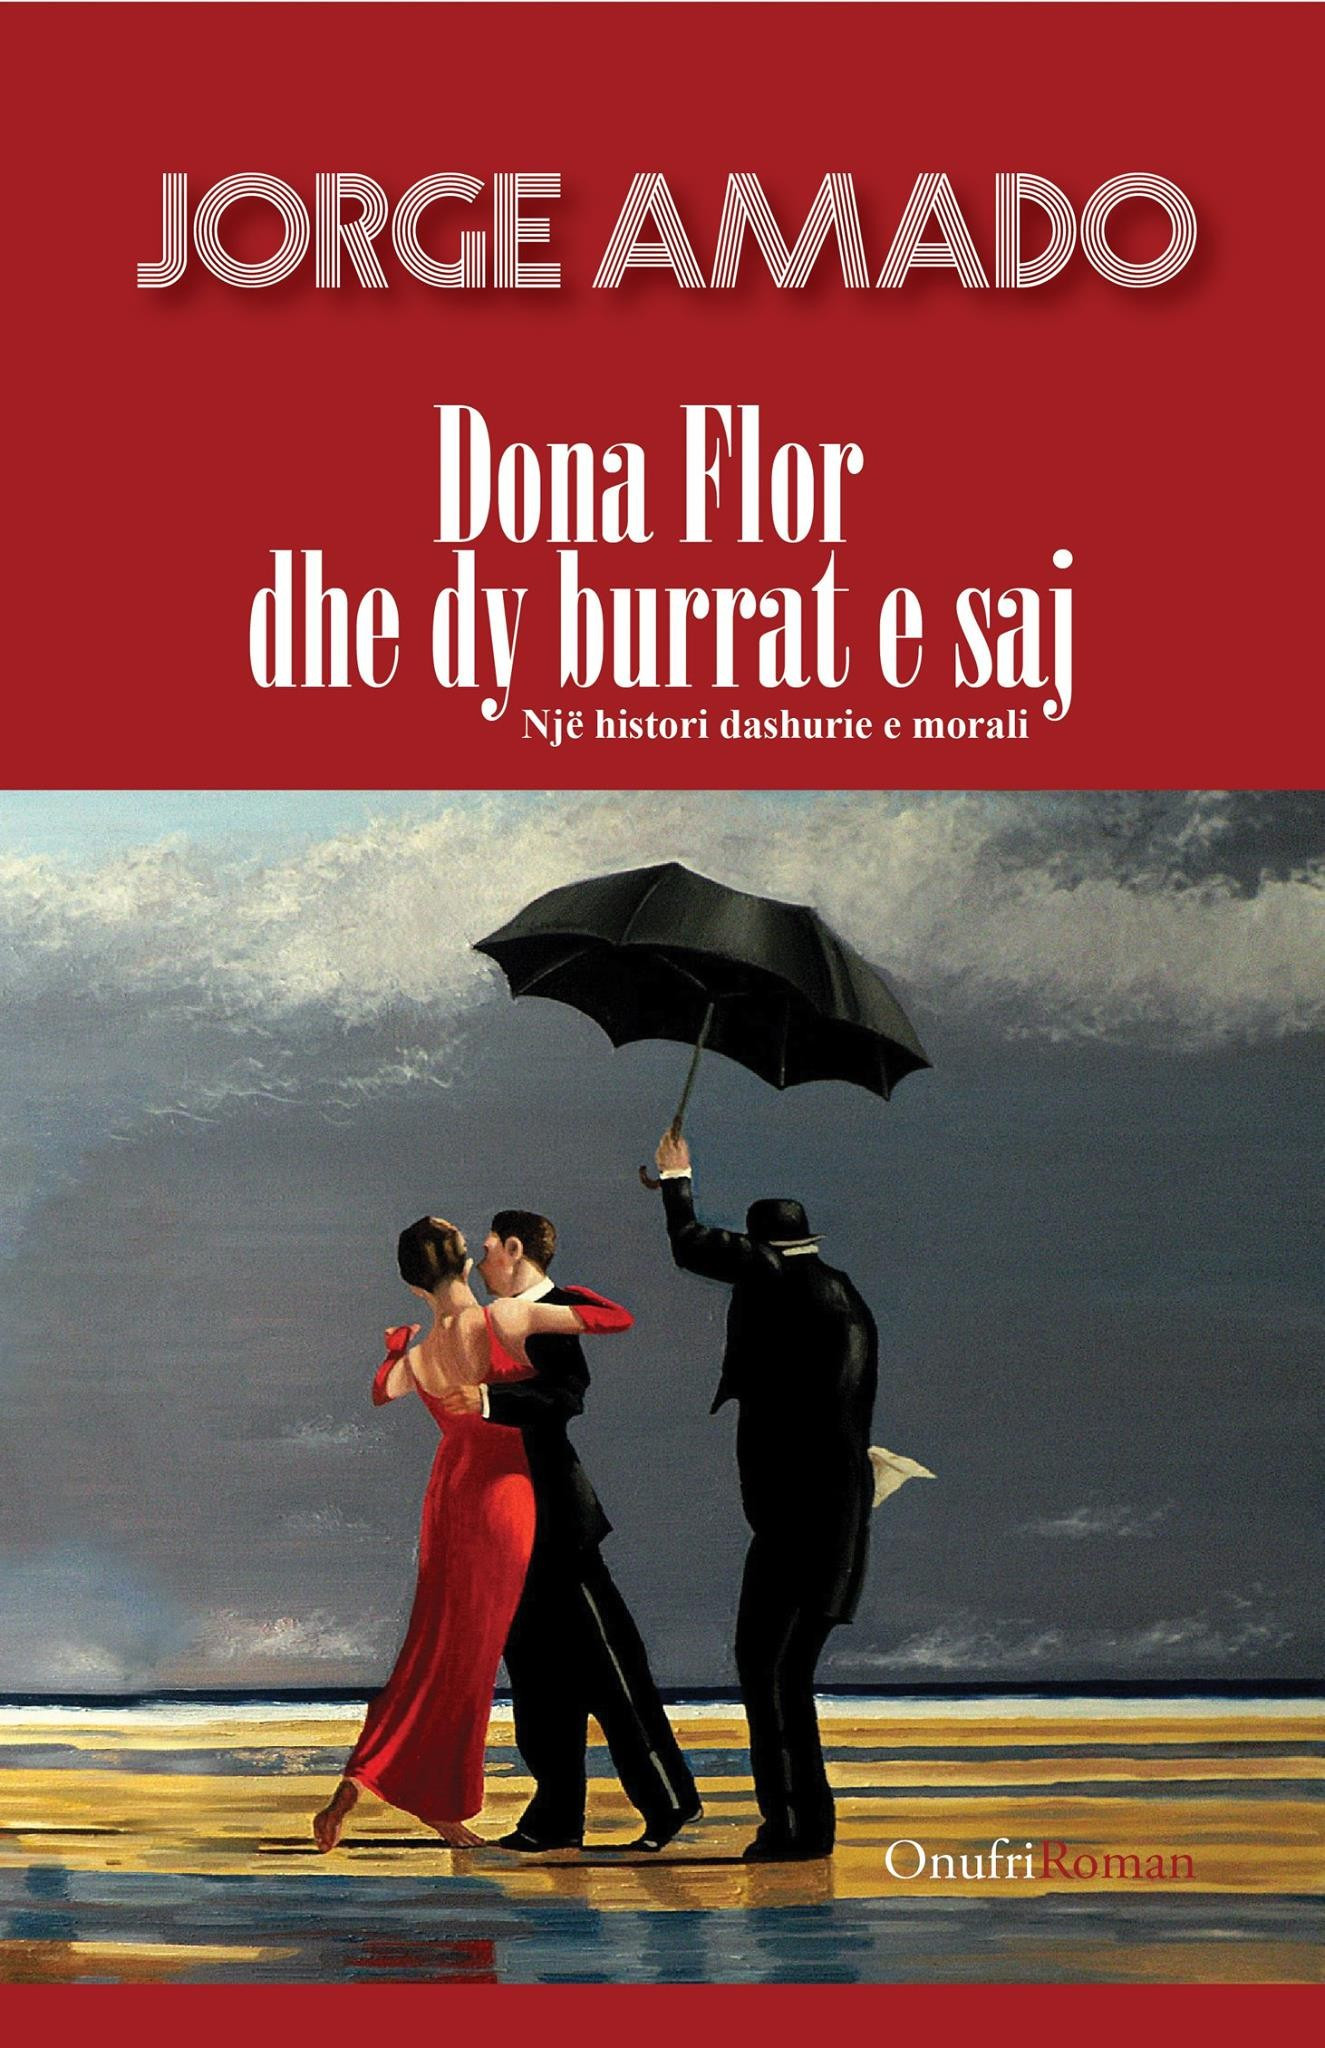 Dona Flor dhe dy burrat e saj – soft cover